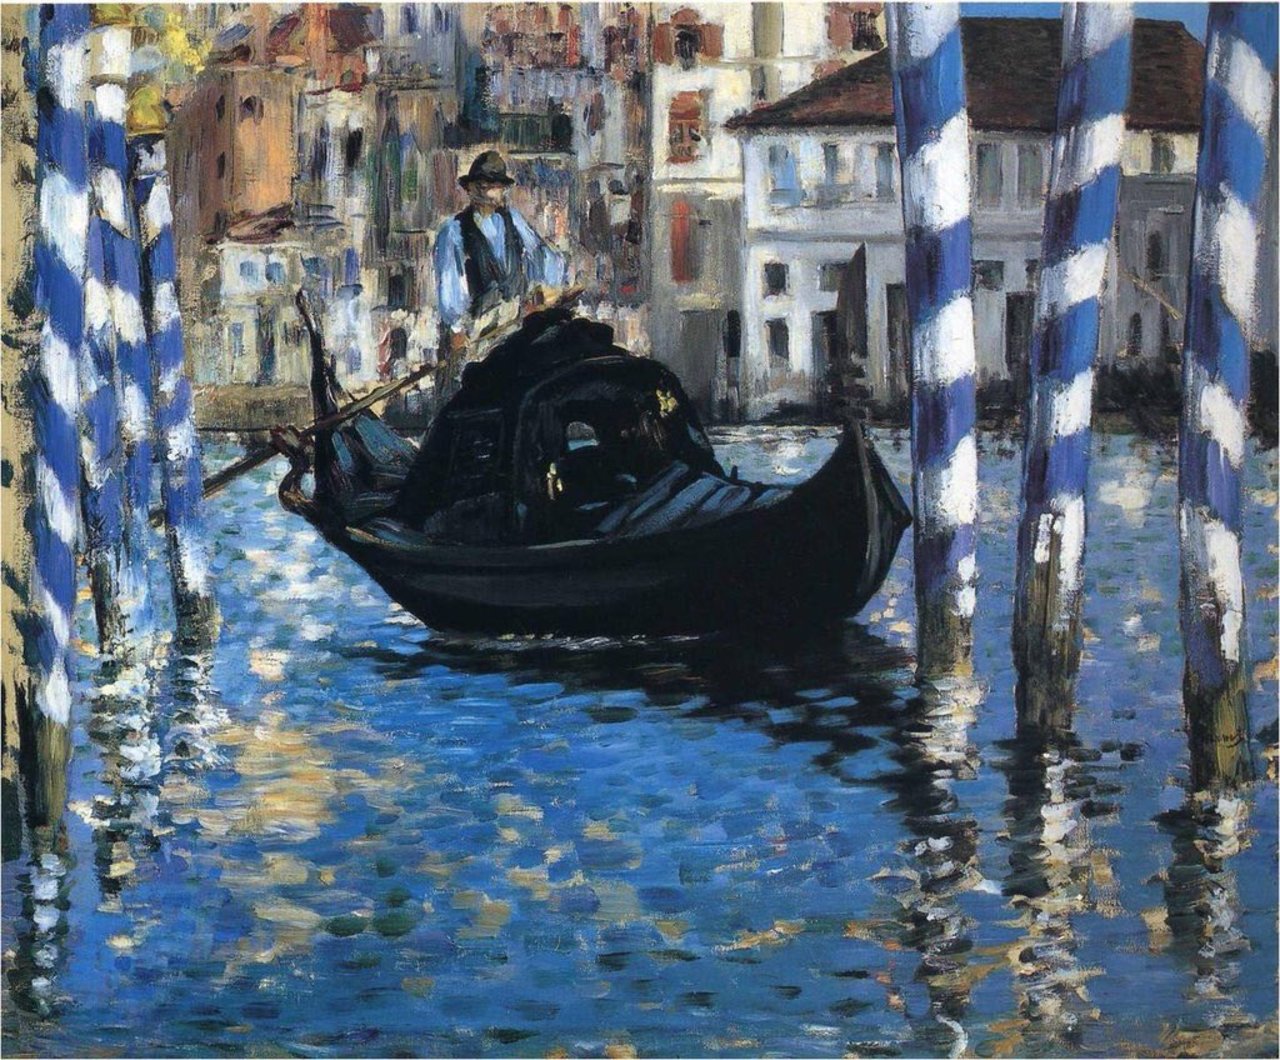 Edouard #MANET, "THE GRAND CANAL OF VENICE" (BLUE VENICE) 1875 #artwit #art #twitart #artist #iloveart #venice #blue https://t.co/YXwmBNZpr0